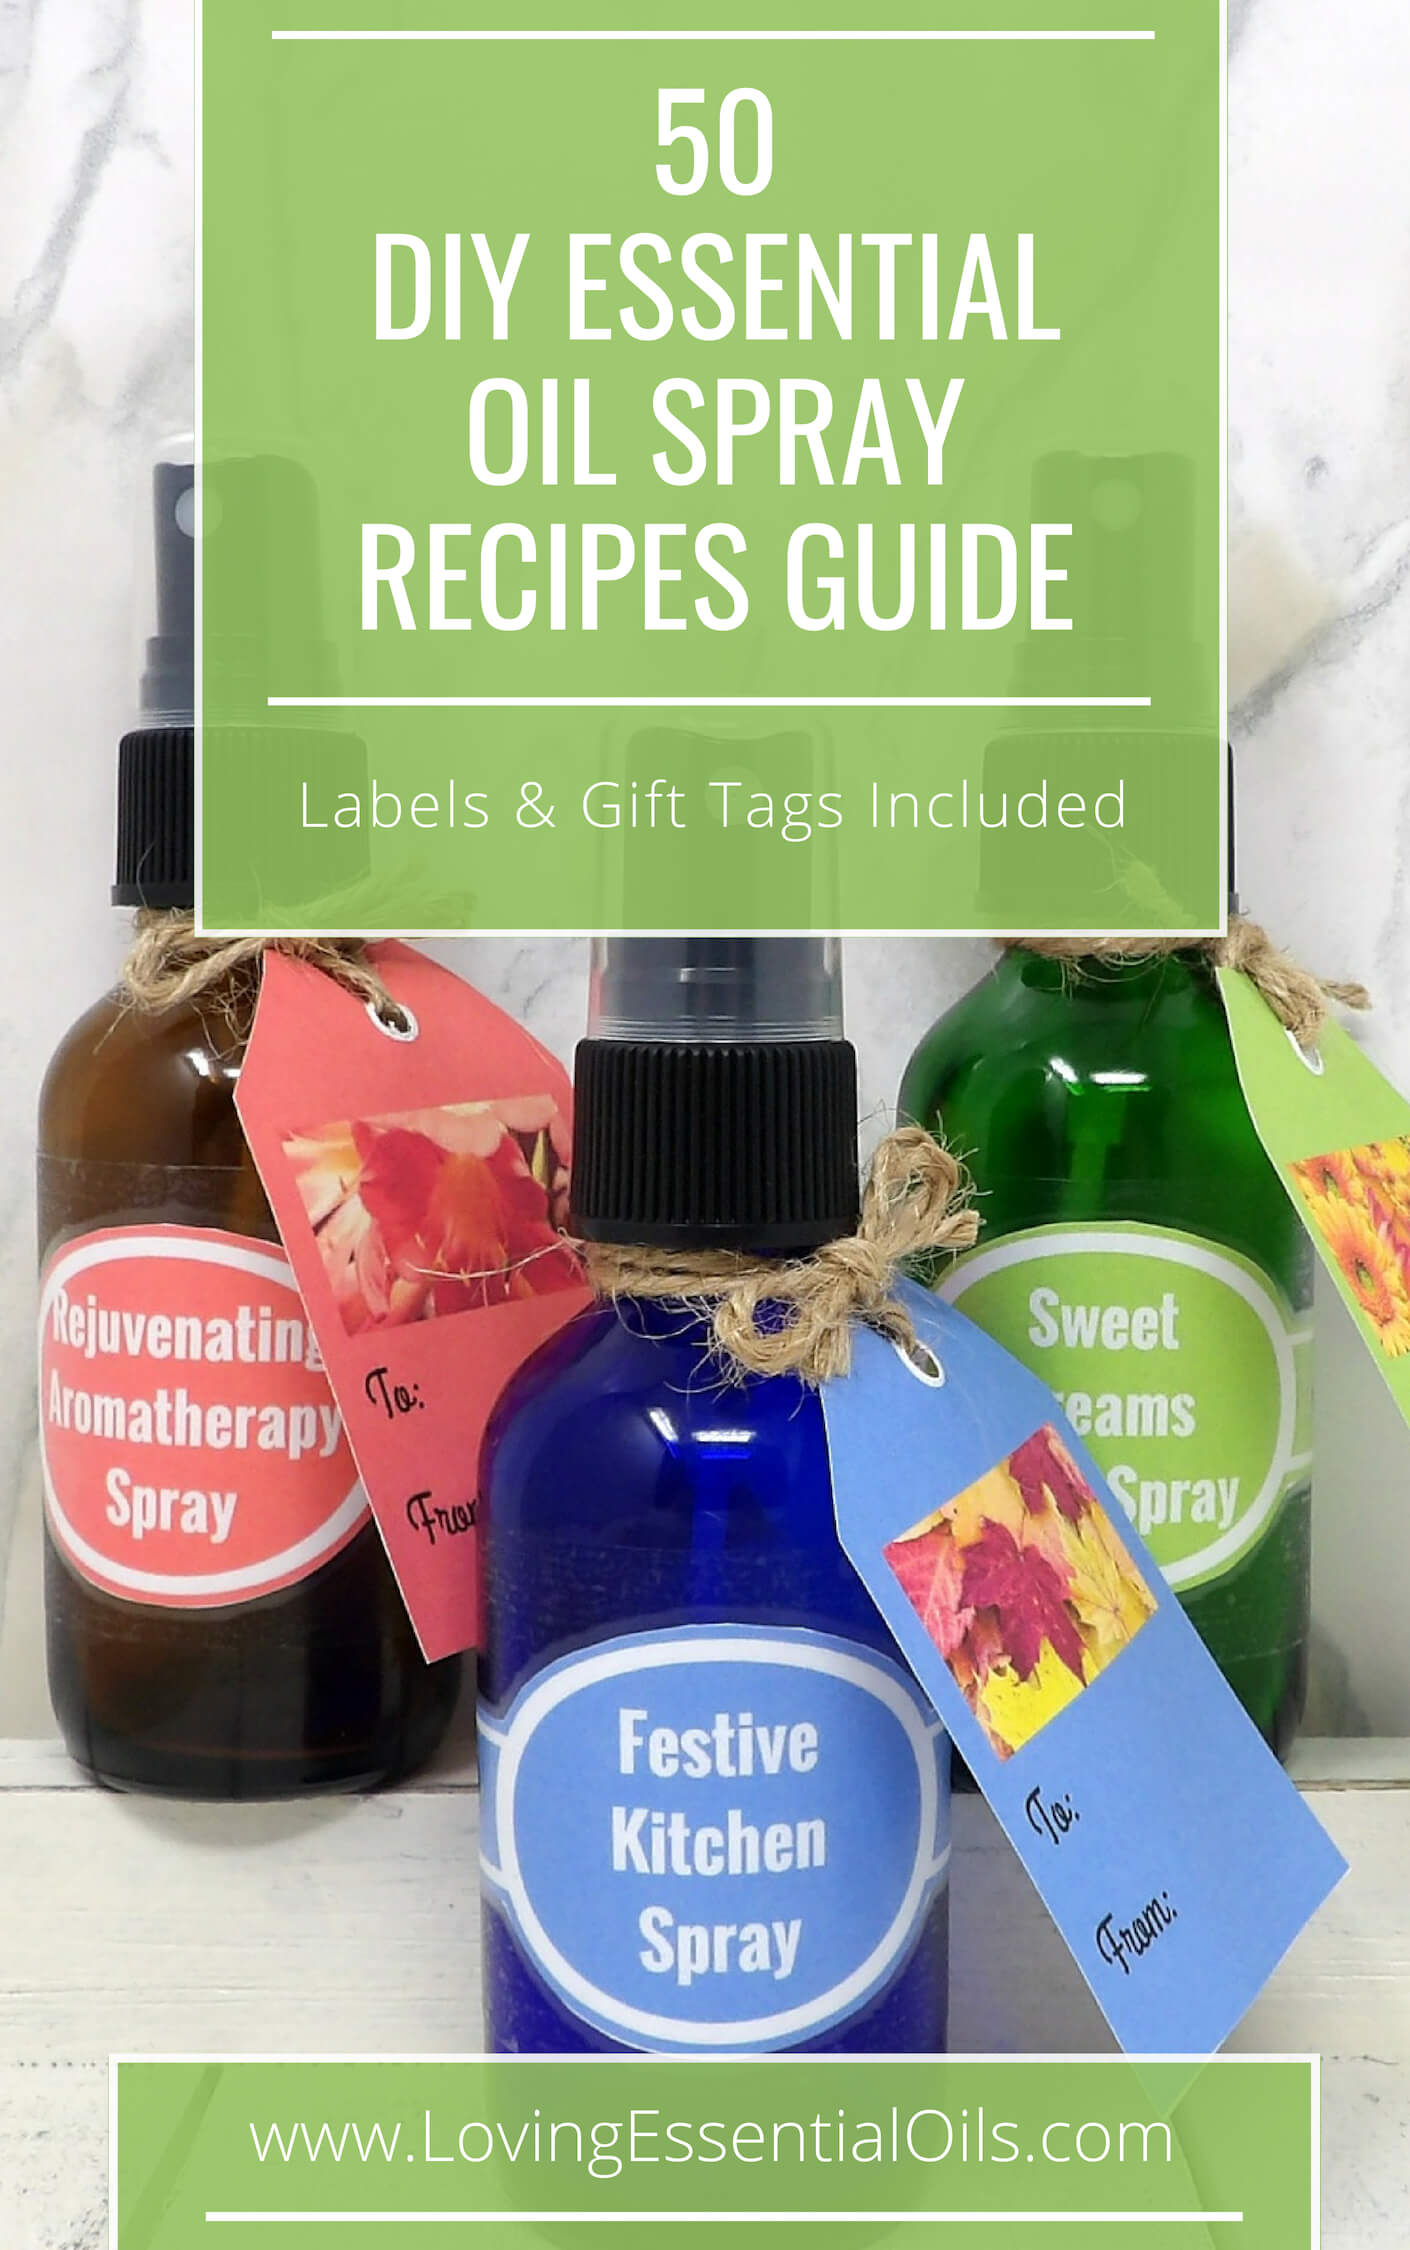 50 DIY Essential Oil Spray Recipes by Loving Essential Oils